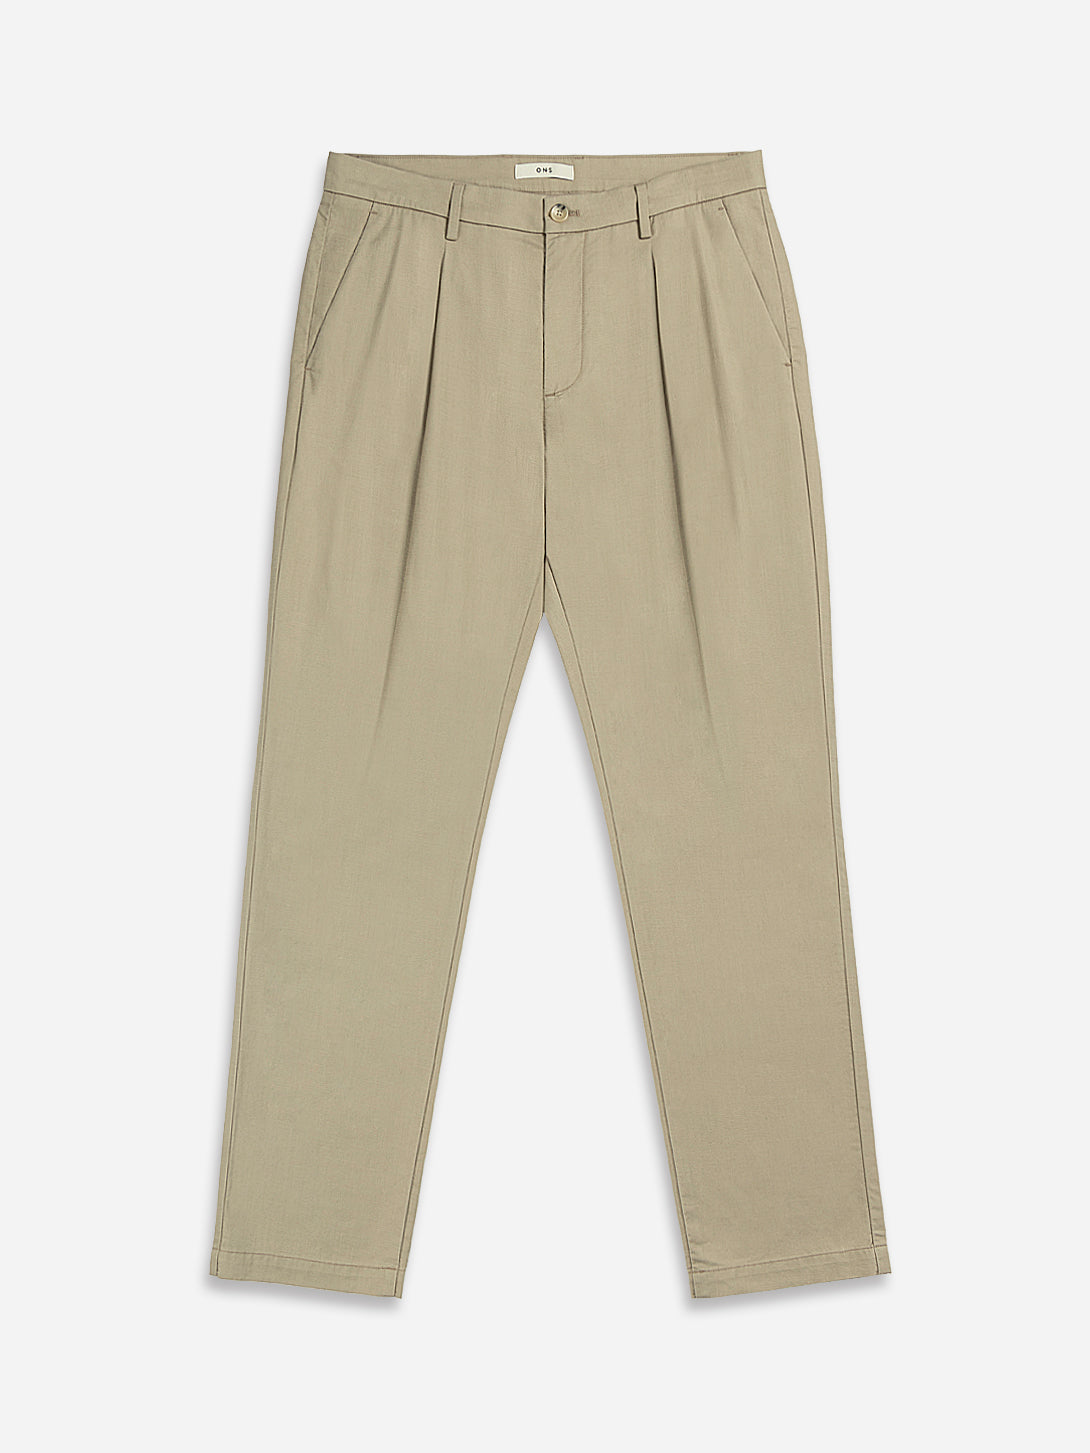 Men's Linen Pants Trousers Beach Pants Drawstring Lightweight Elastic Waist  | eBay